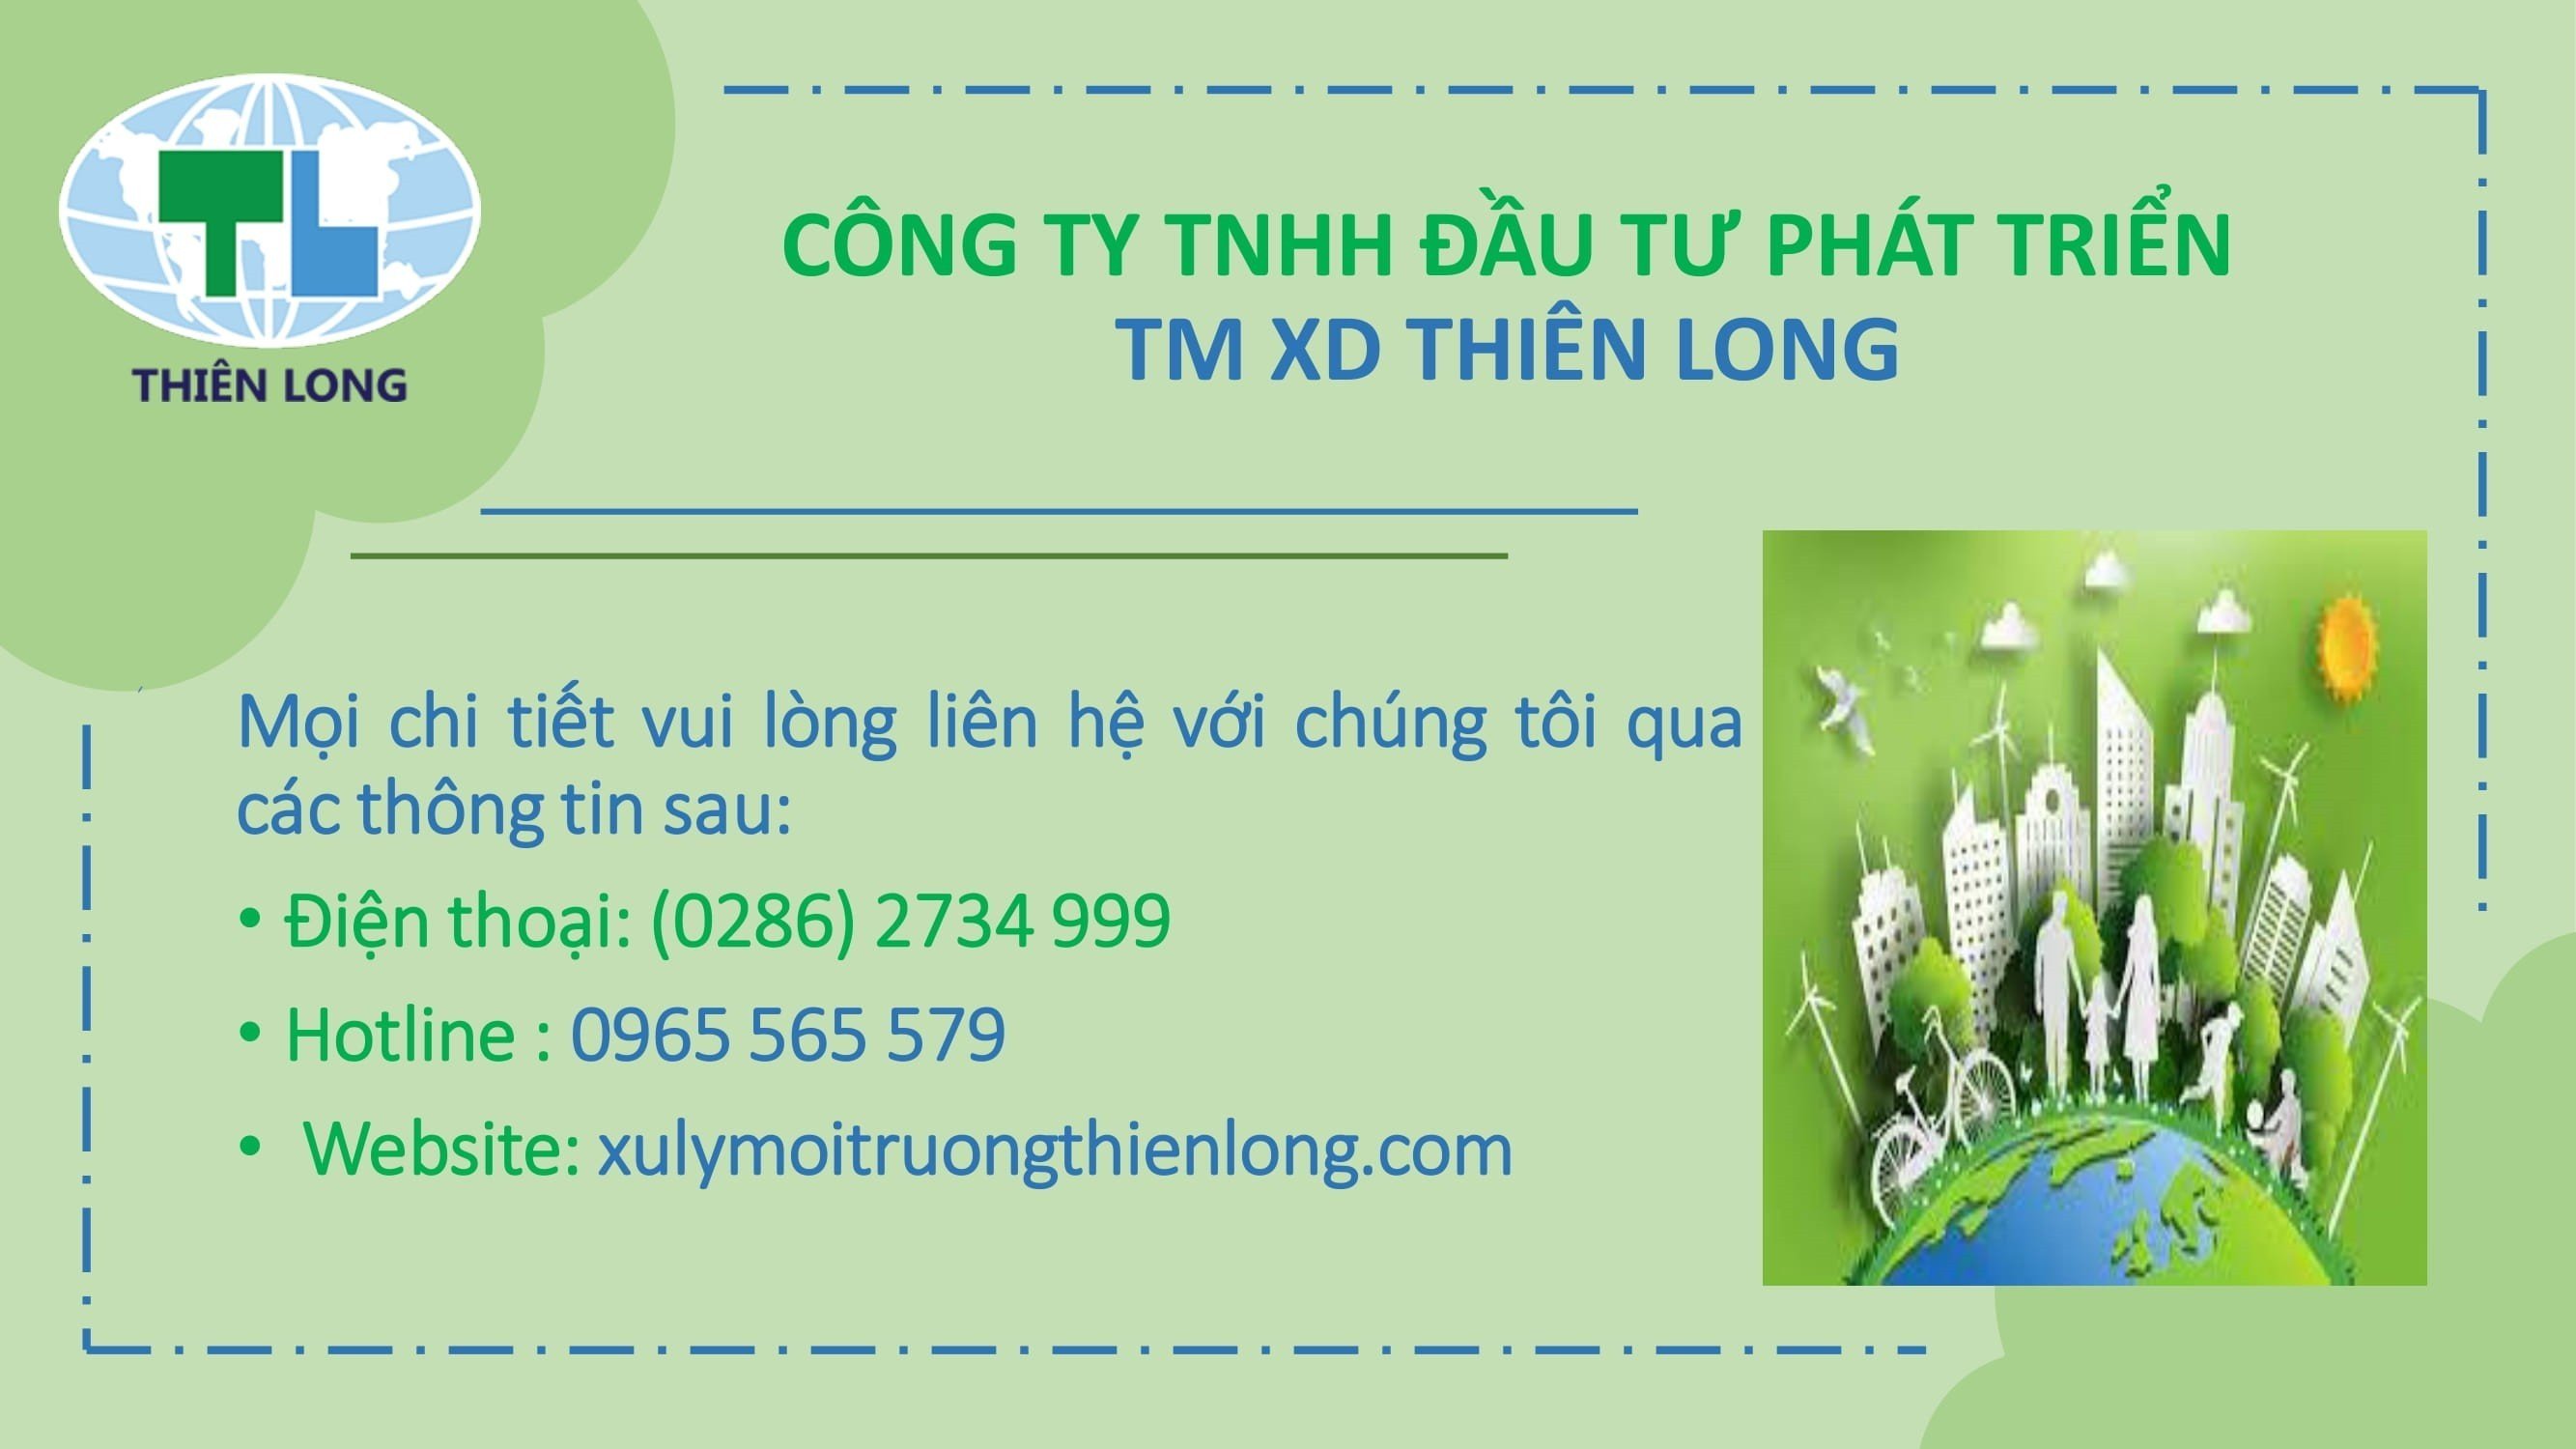 Công ty TNHH Đầu Tư Phát triển TM XD Thiên Long